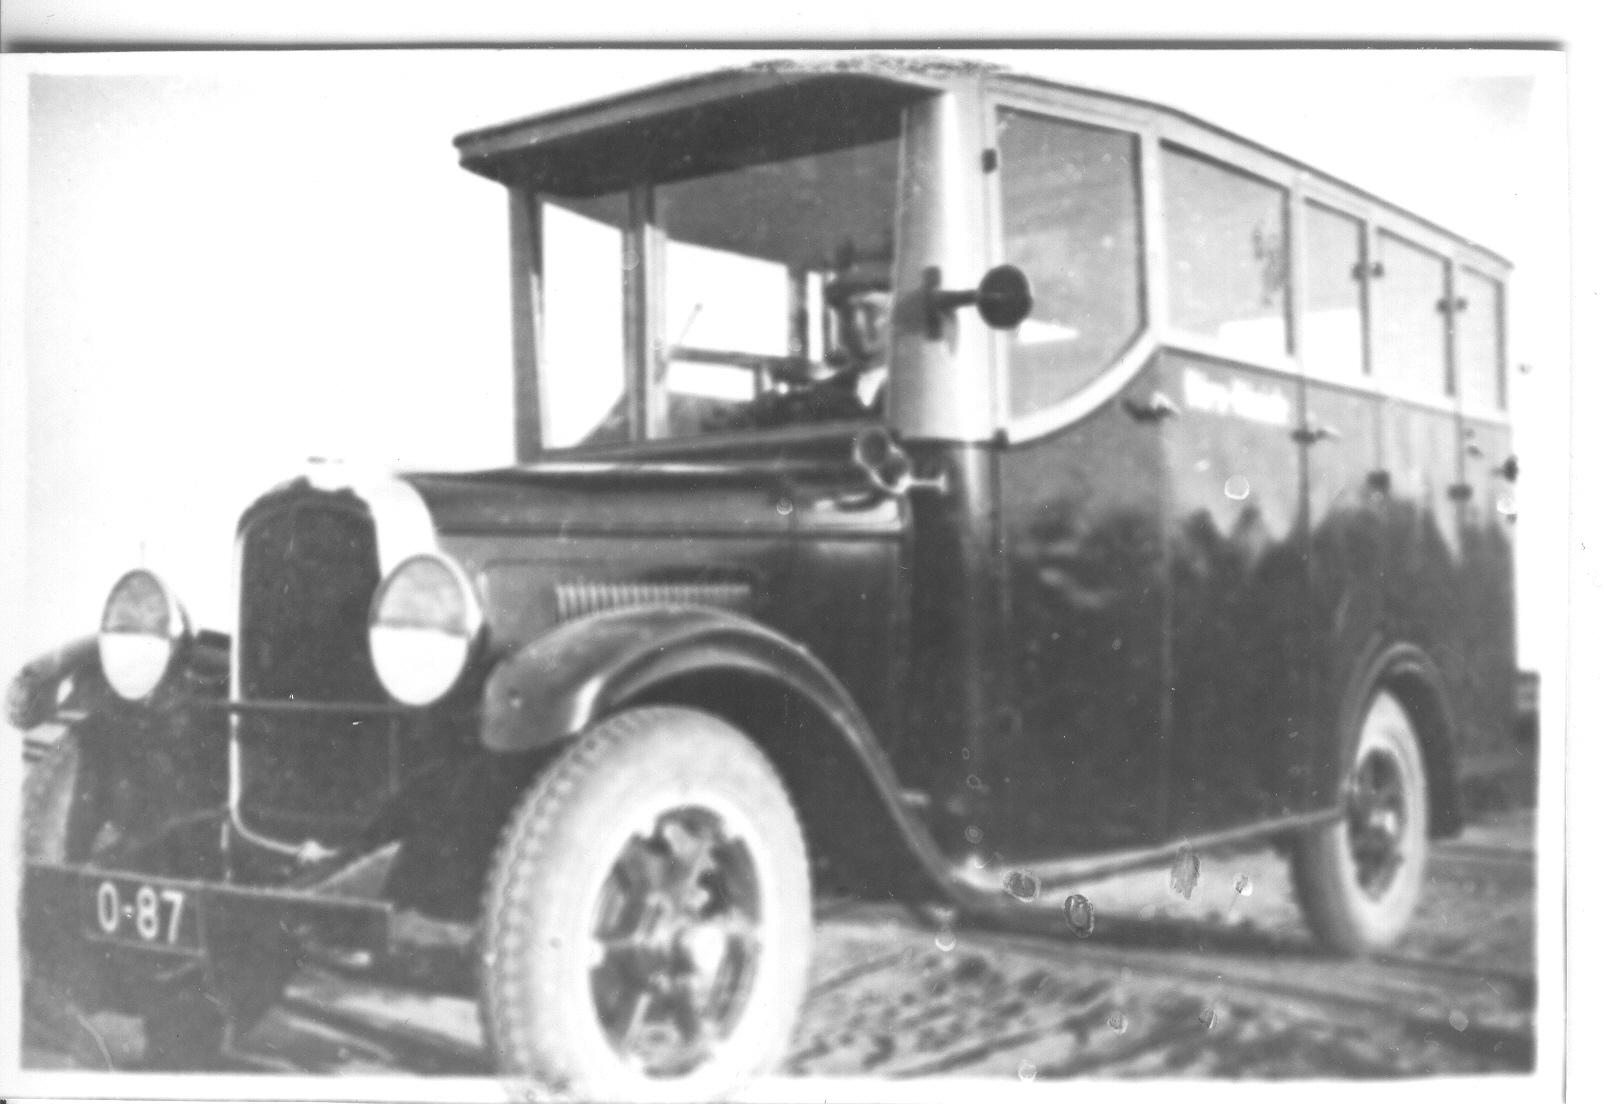 Photo (negative) Autobus Whippet 0-87 Võru-Mõniste 1931.